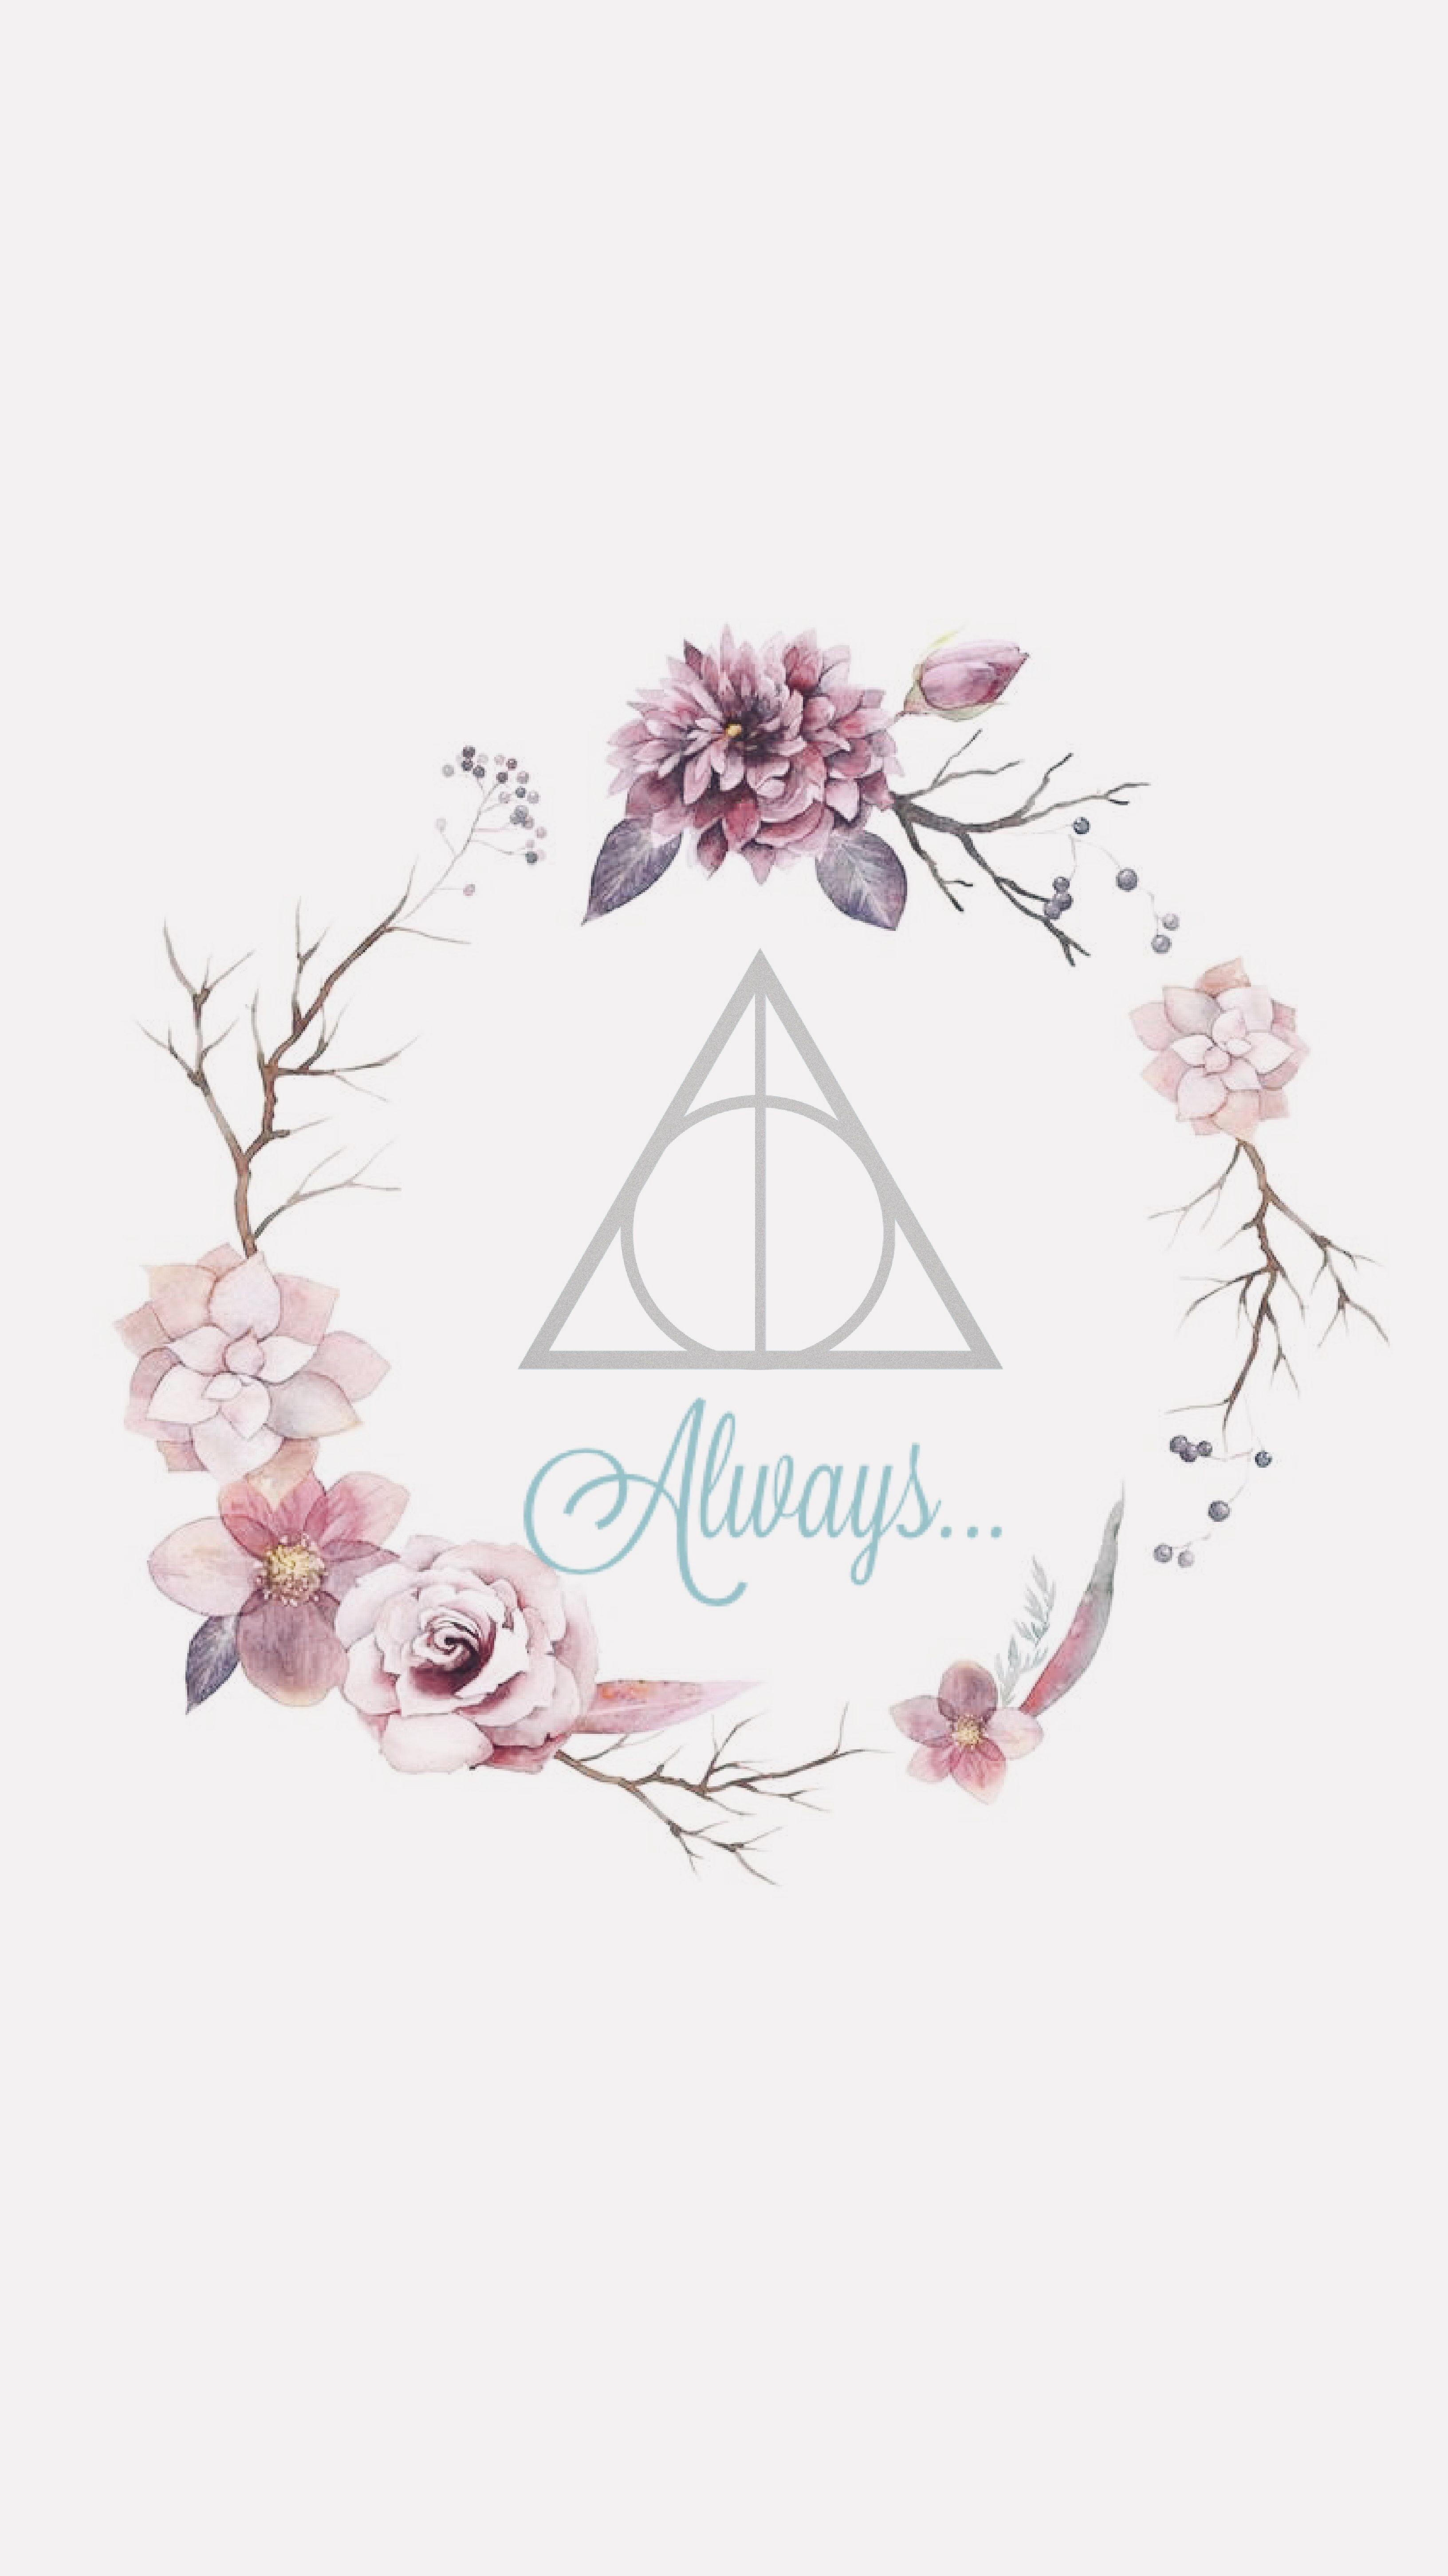 Nếu bạn đang tìm kiếm một hình ảnh Harry Potter hồng đáng yêu, chúng tôi tự tin rằng chúng tôi có điều đó! Với một sự kết hợp đầy tinh tế của màu hồng và các hình ảnh từ truyện Harry Potter, hình ảnh của chúng tôi sẽ khiến bạn cảm thấy hài lòng và phấn khích.